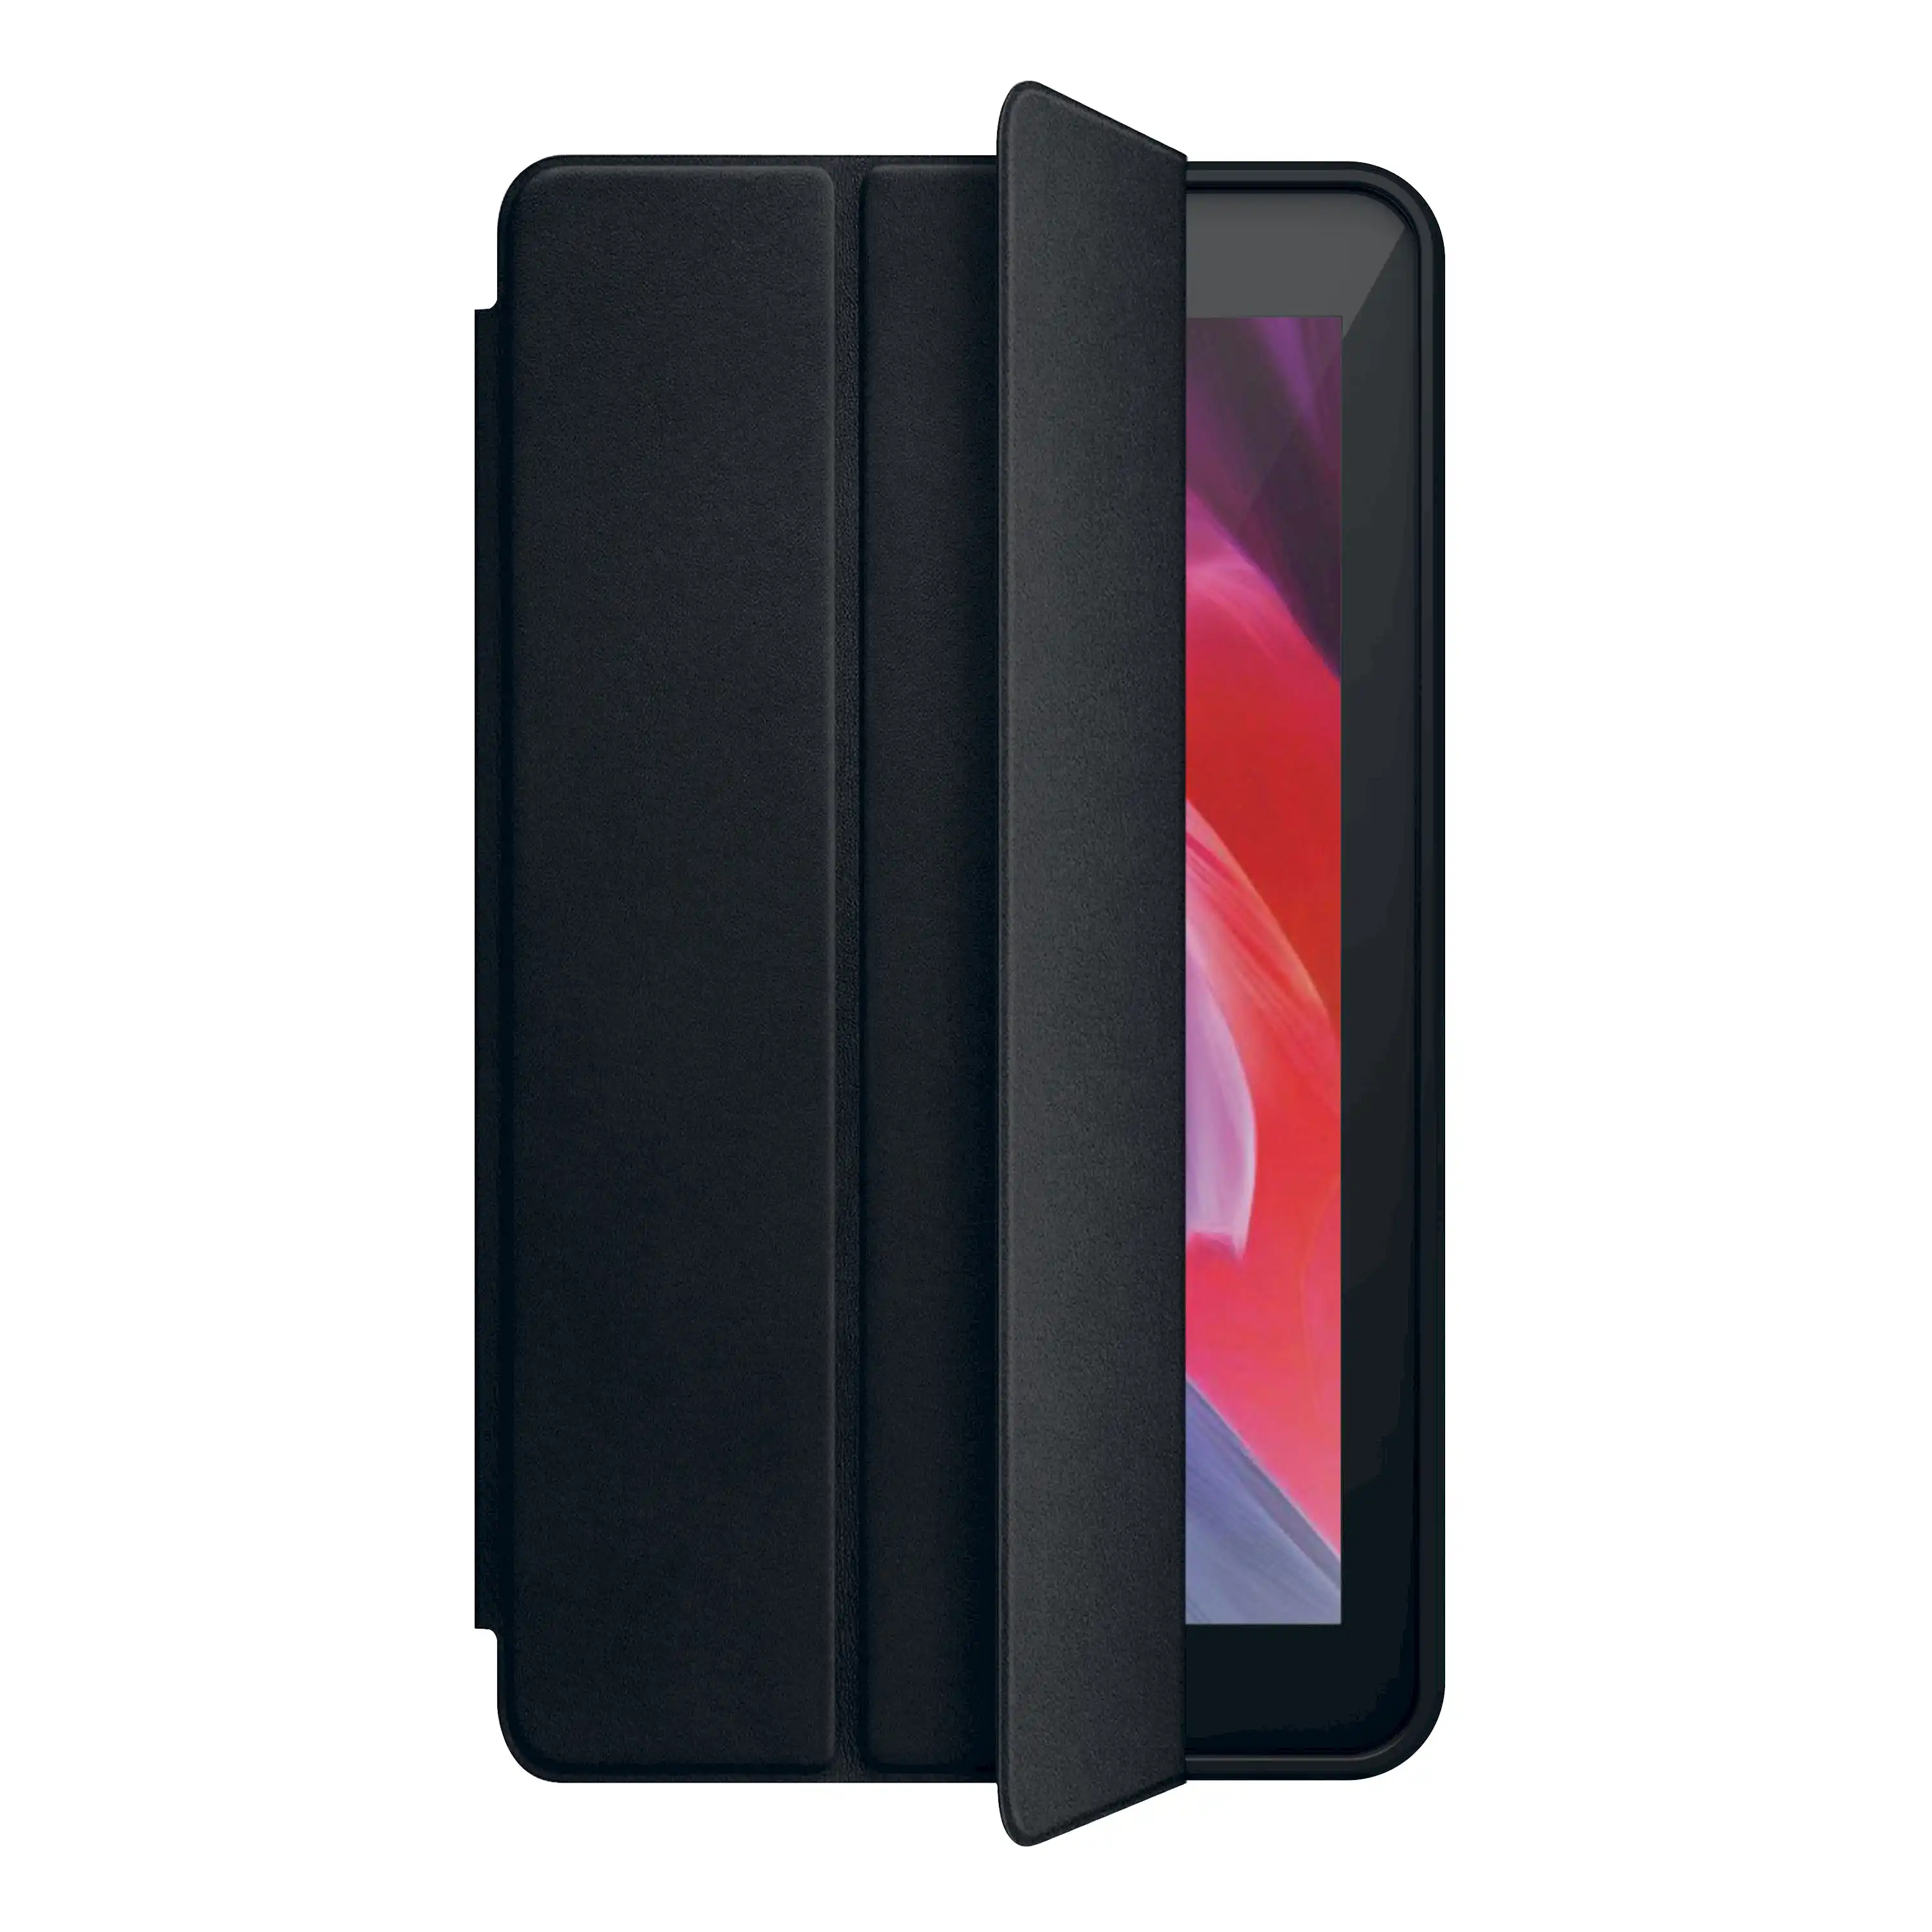 Flip Case for Laser 7" for MID-785 Tablet - Black